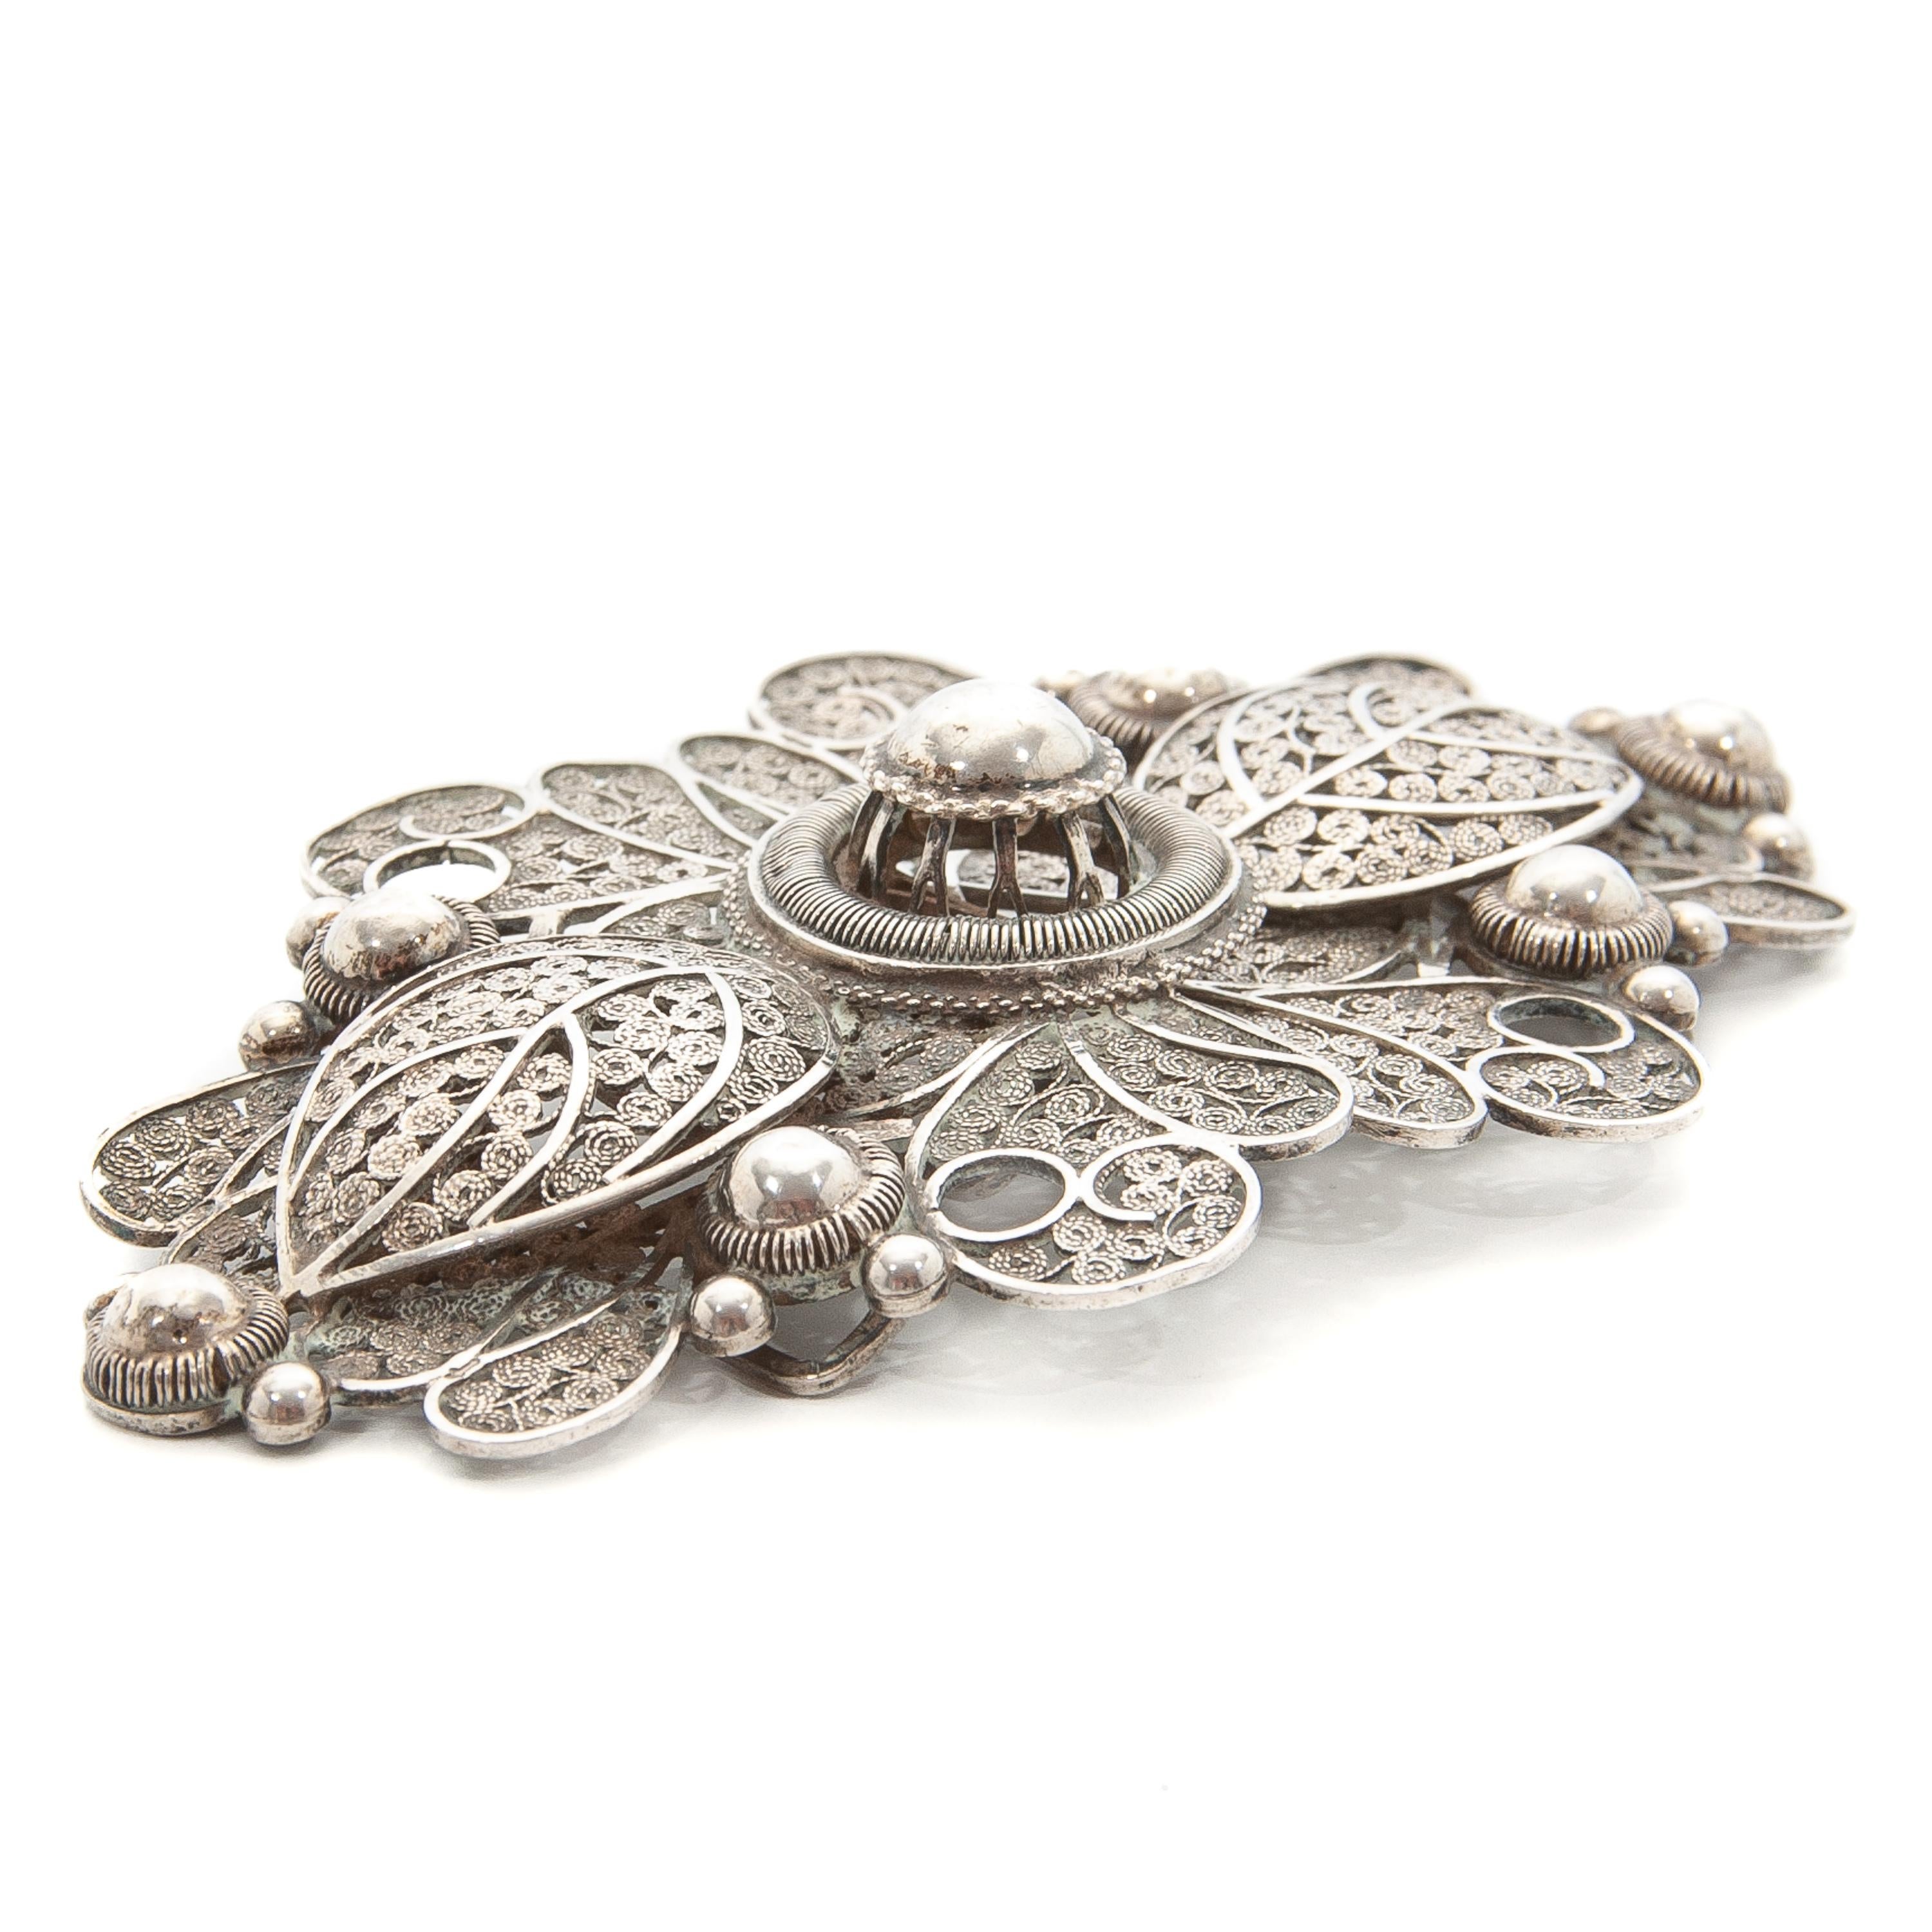 Women's or Men's Art Nouveau Silver Filigree Foliage Belt Buckle